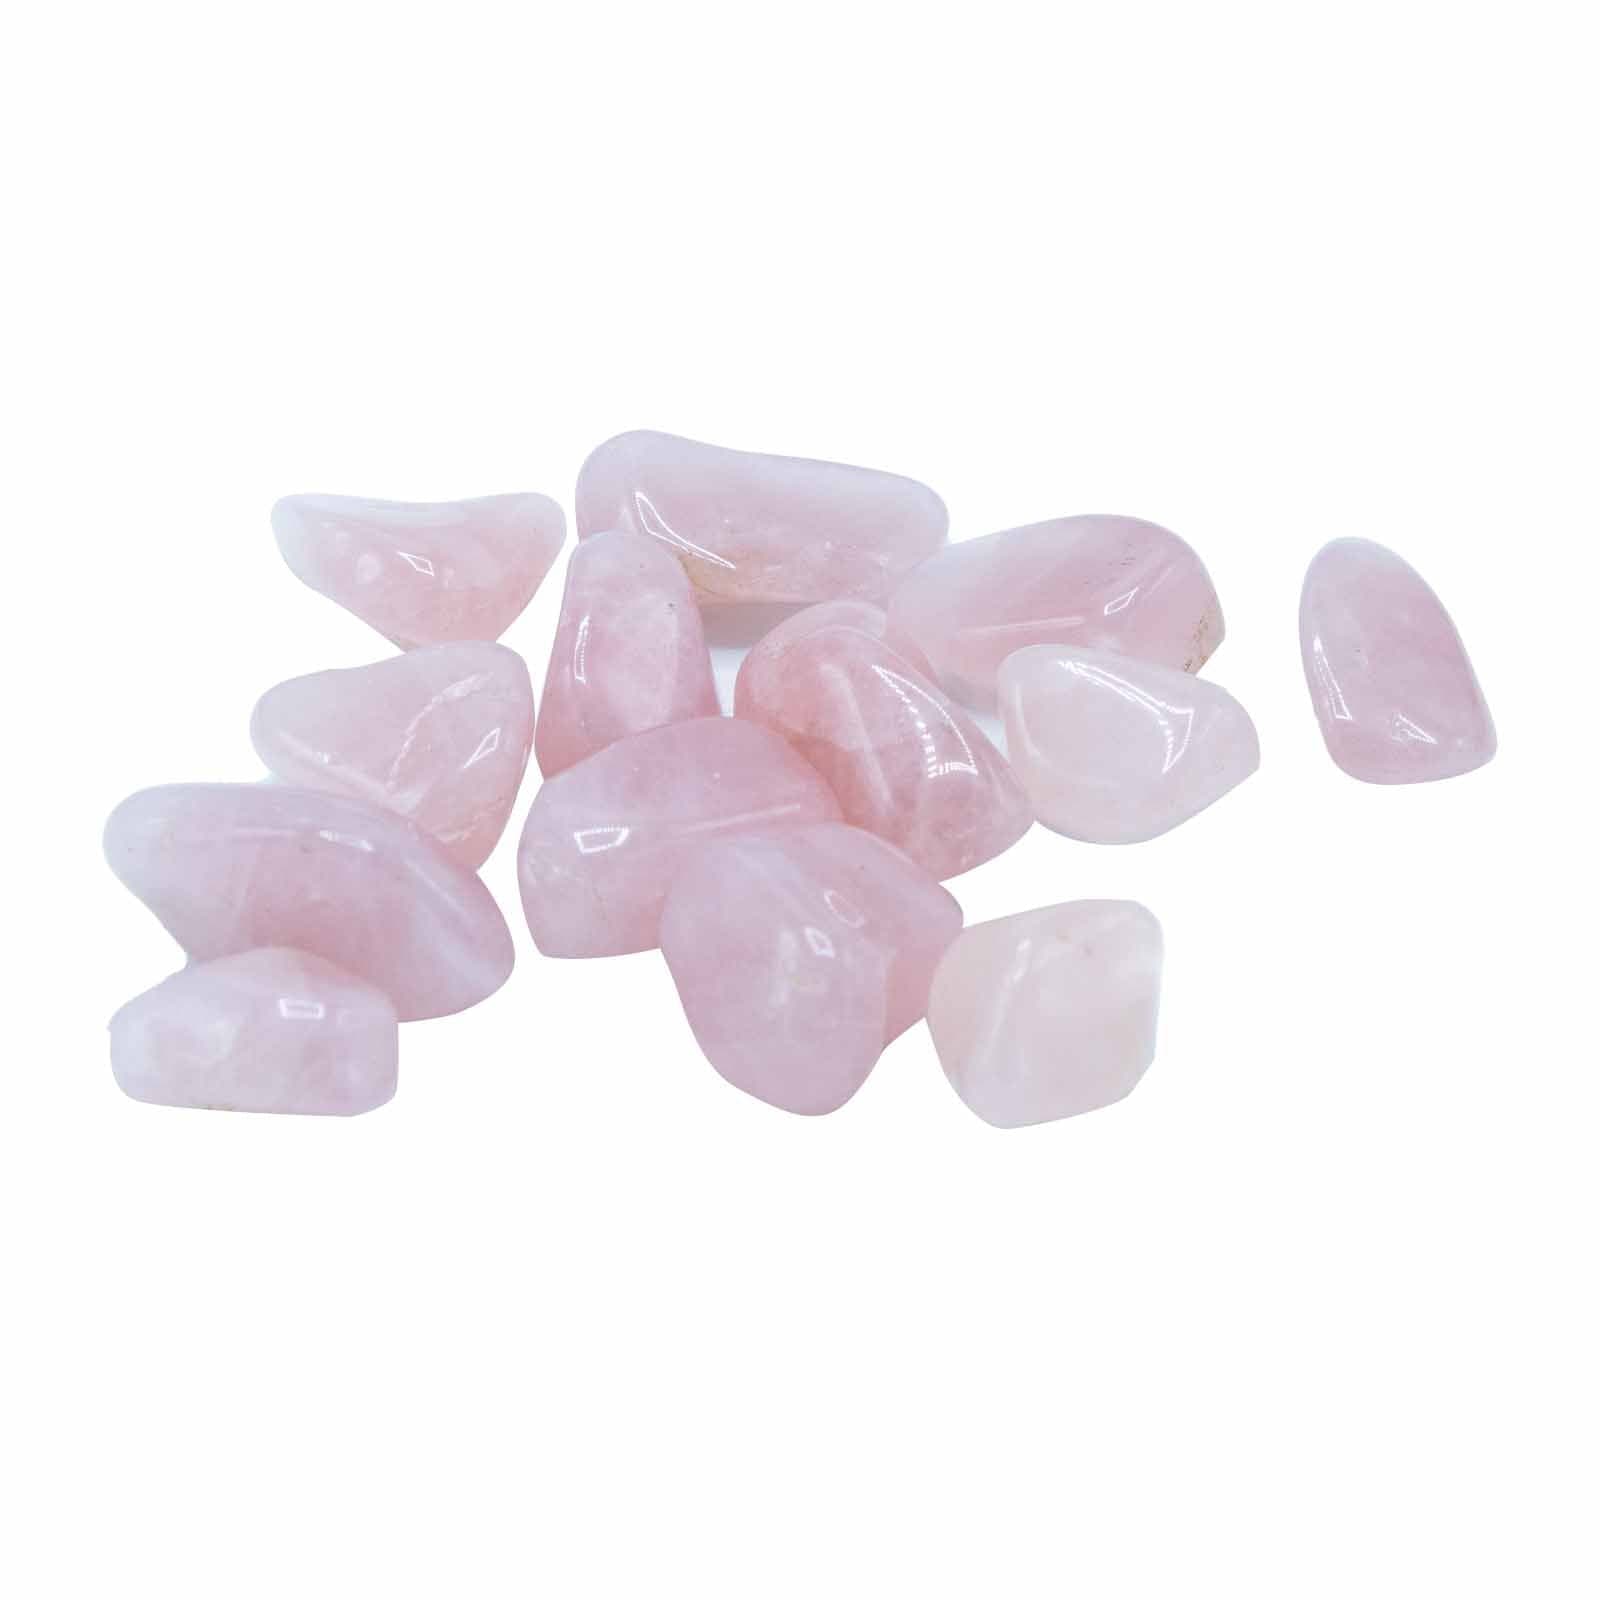 Tumble Stone - Rose Quartz M - Premium  from Bliss - Just €0.74! Shop now at Maltashopper.com